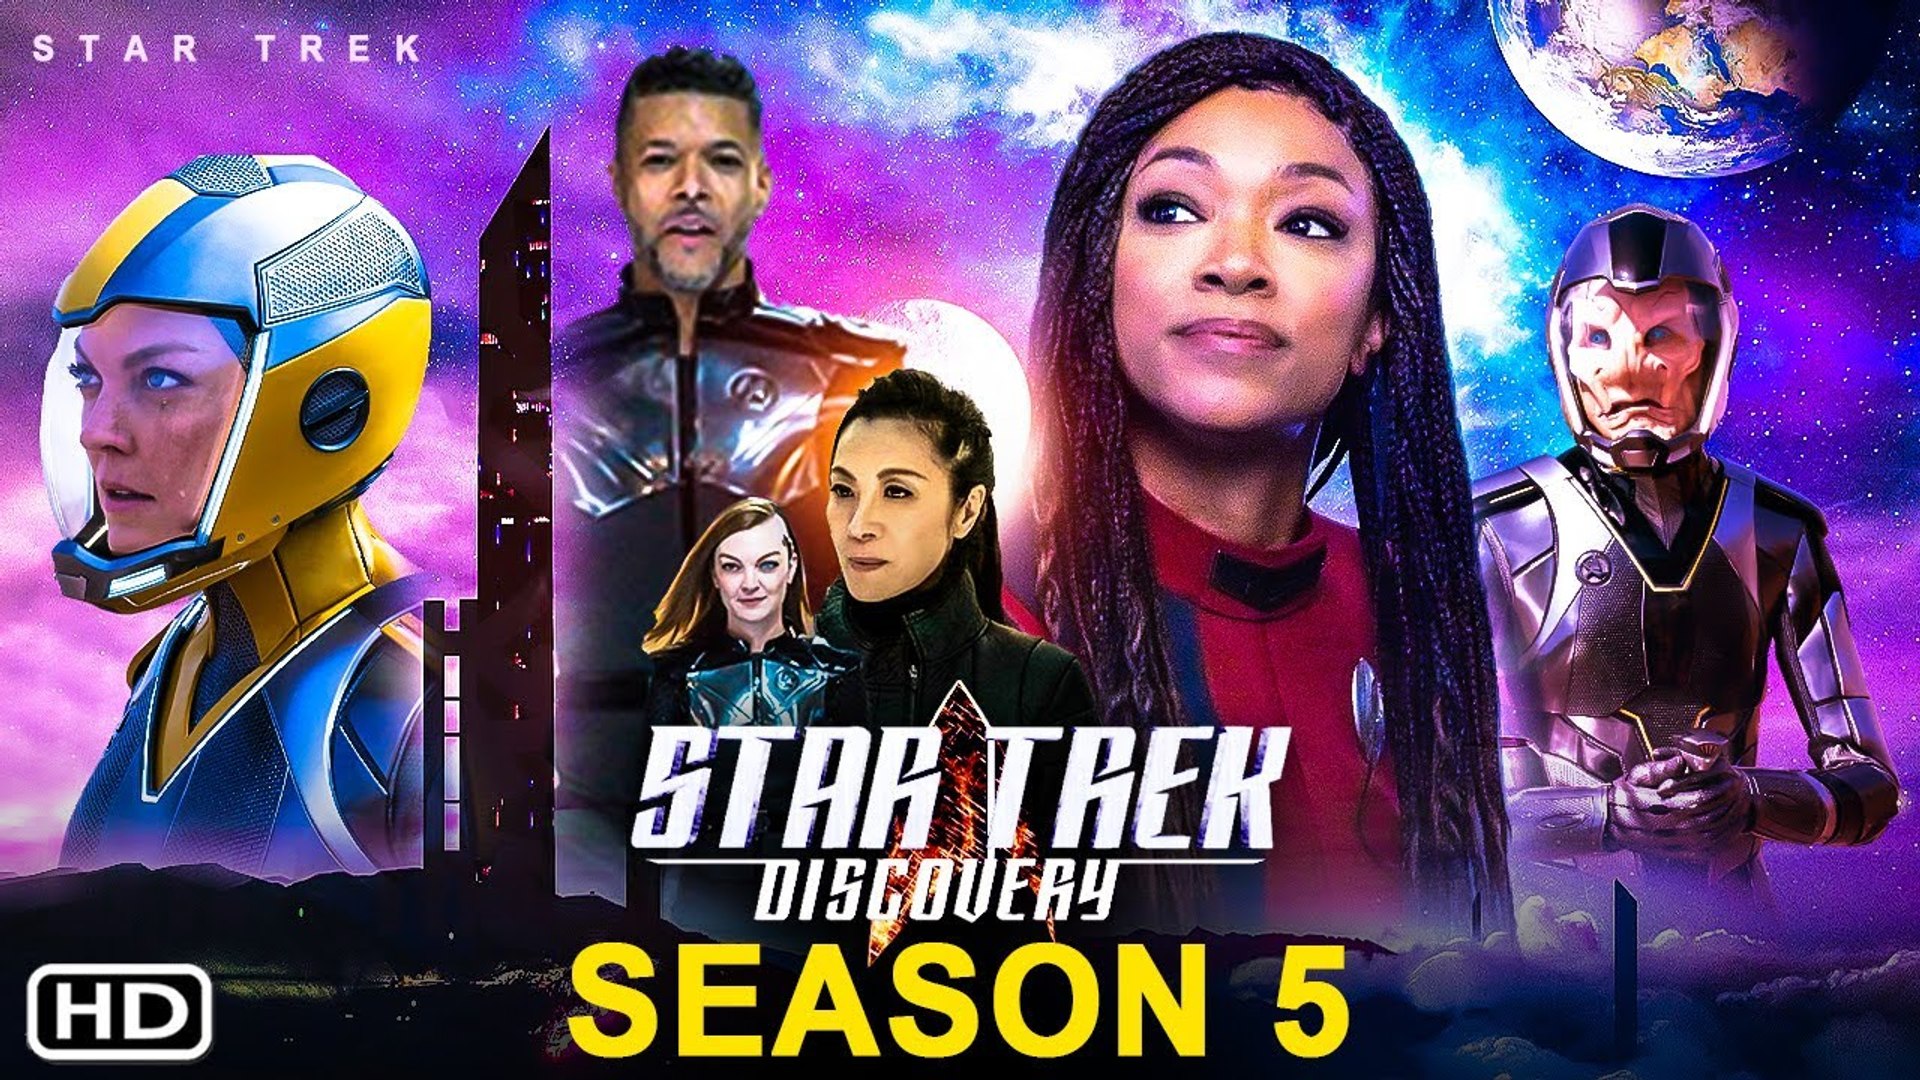 Star Trek Discovery Season 5 Trailer (2022) - CBS, Sonequa Martin-Green,  Episode 1, Spoiler, Ending - video Dailymotion